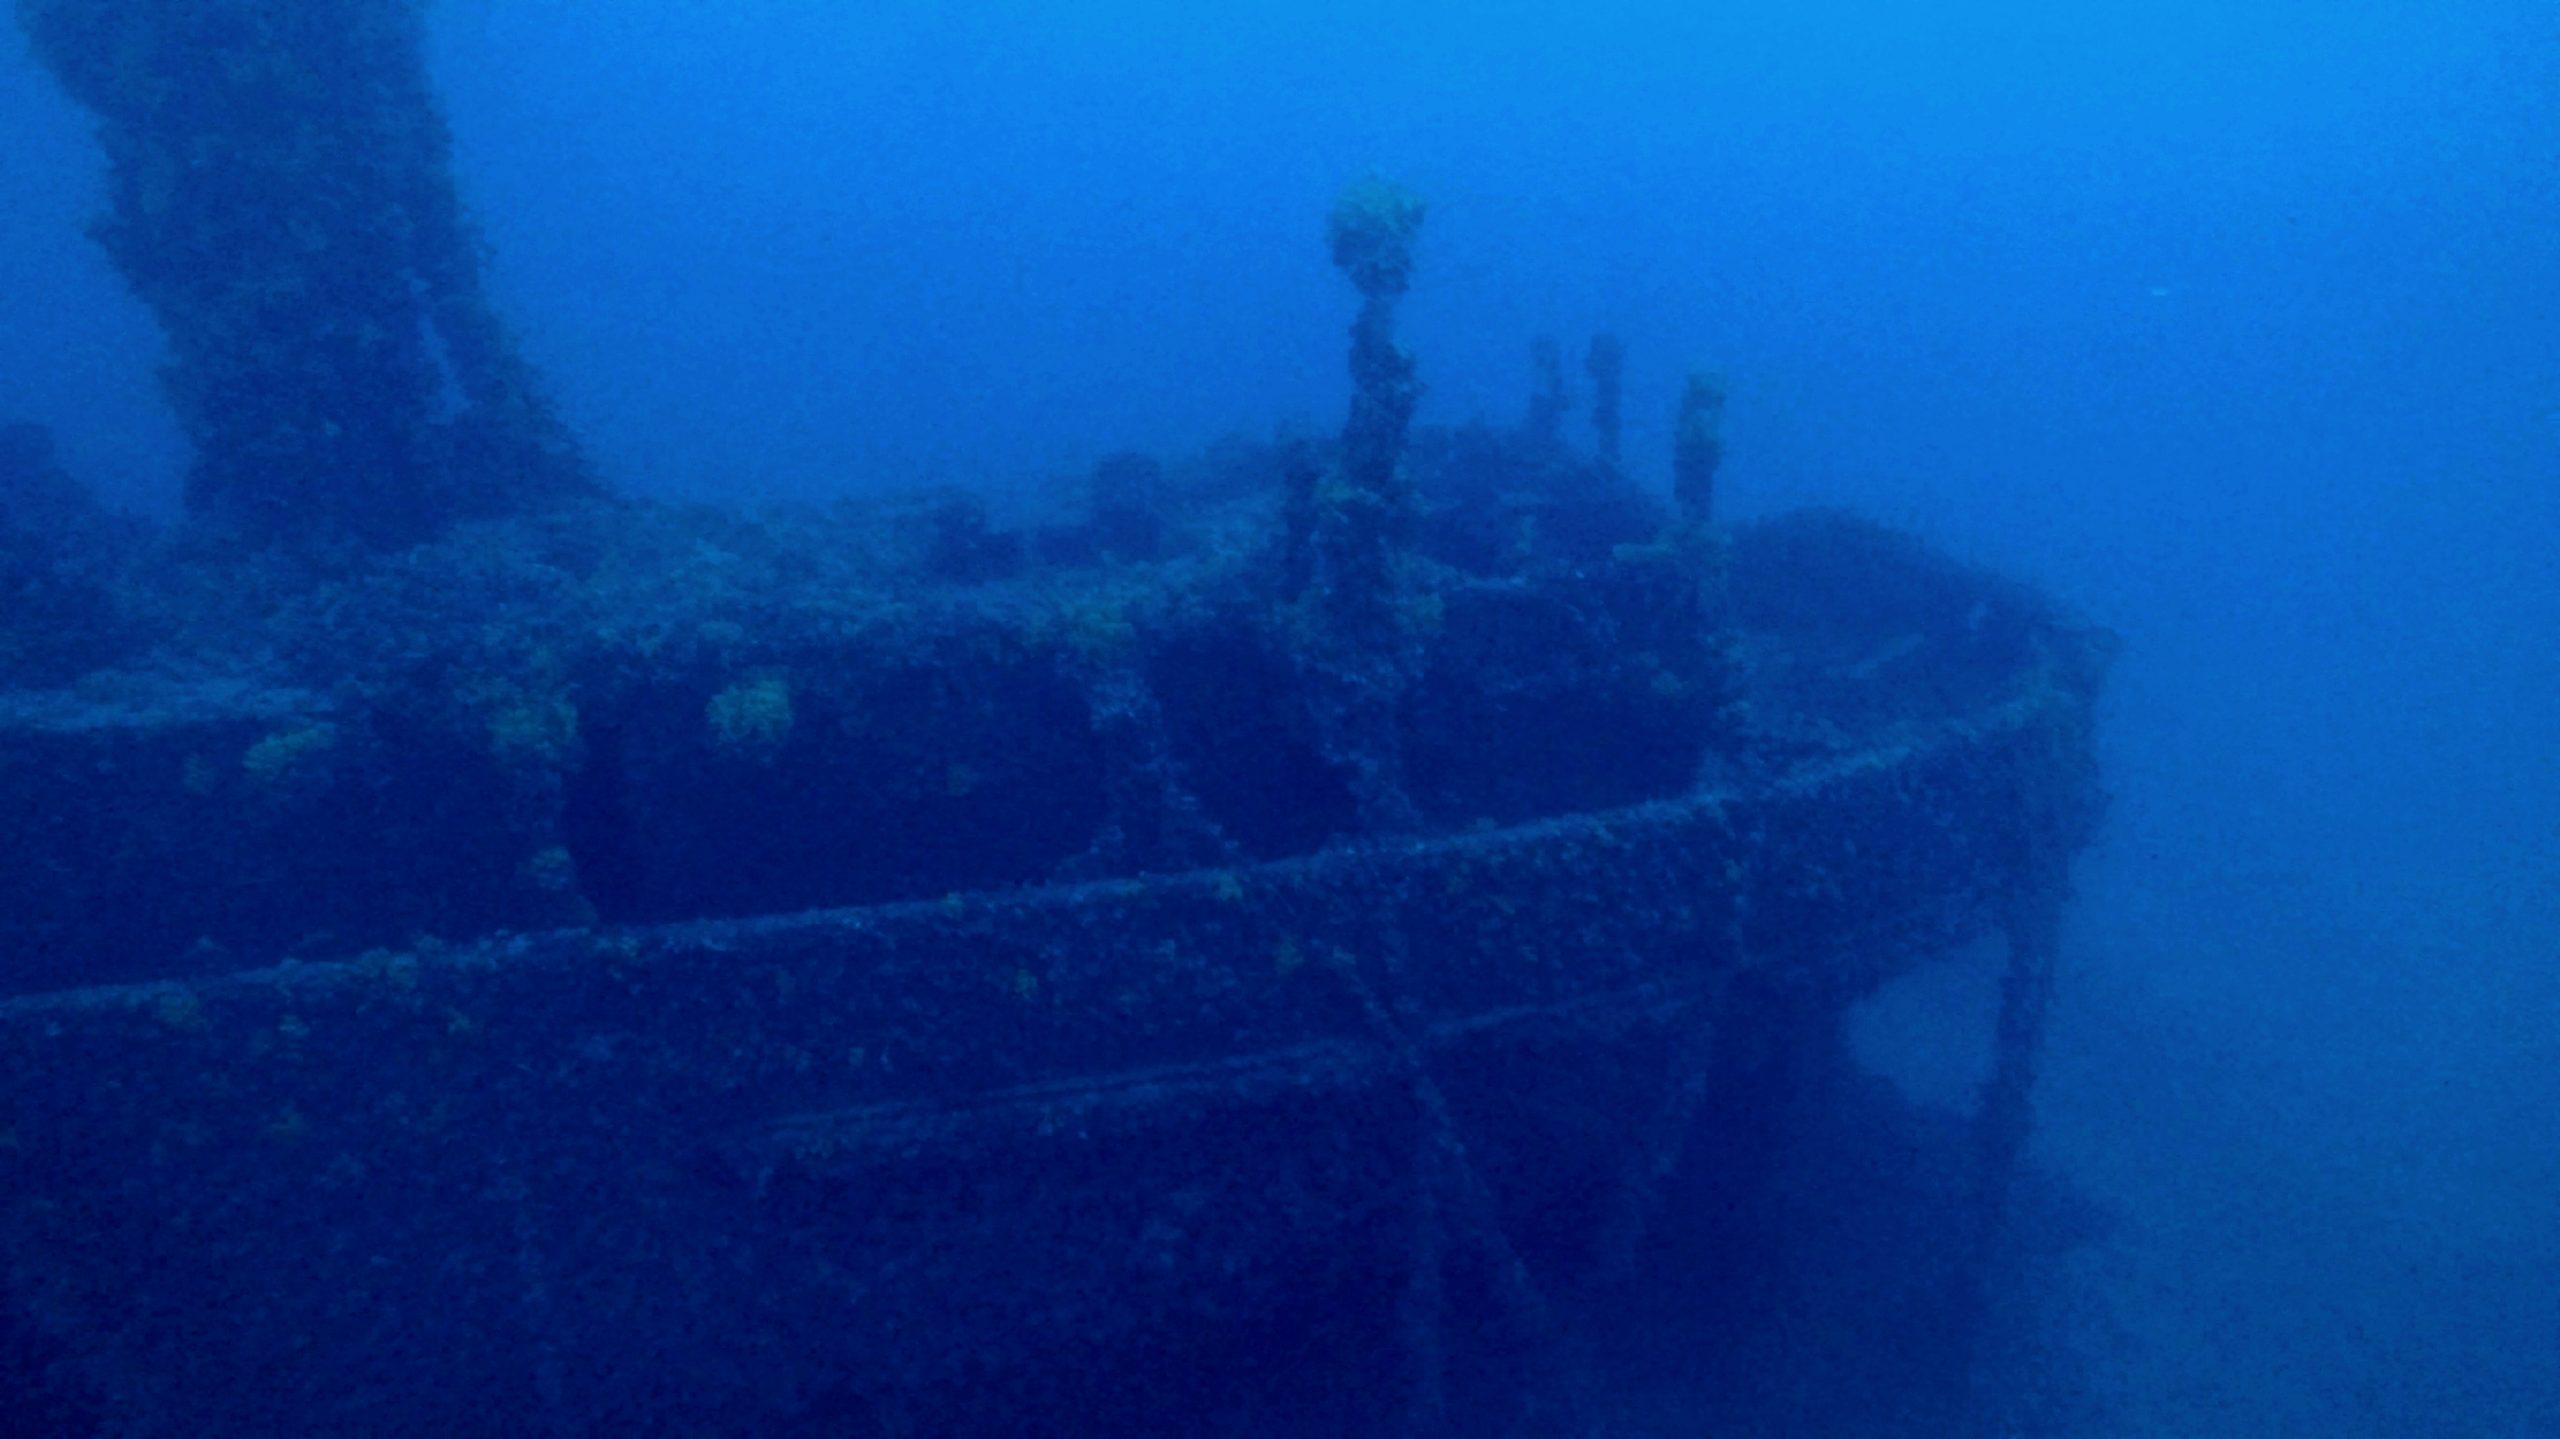 Ναυάγιο ισπανικού ατμόπλοιου εντοπίστηκε στην Κύθνο – Ο τορπιλισμός από το υποβρύχιο “Κατσώνης” – Εντυπωσιακές εικόνες